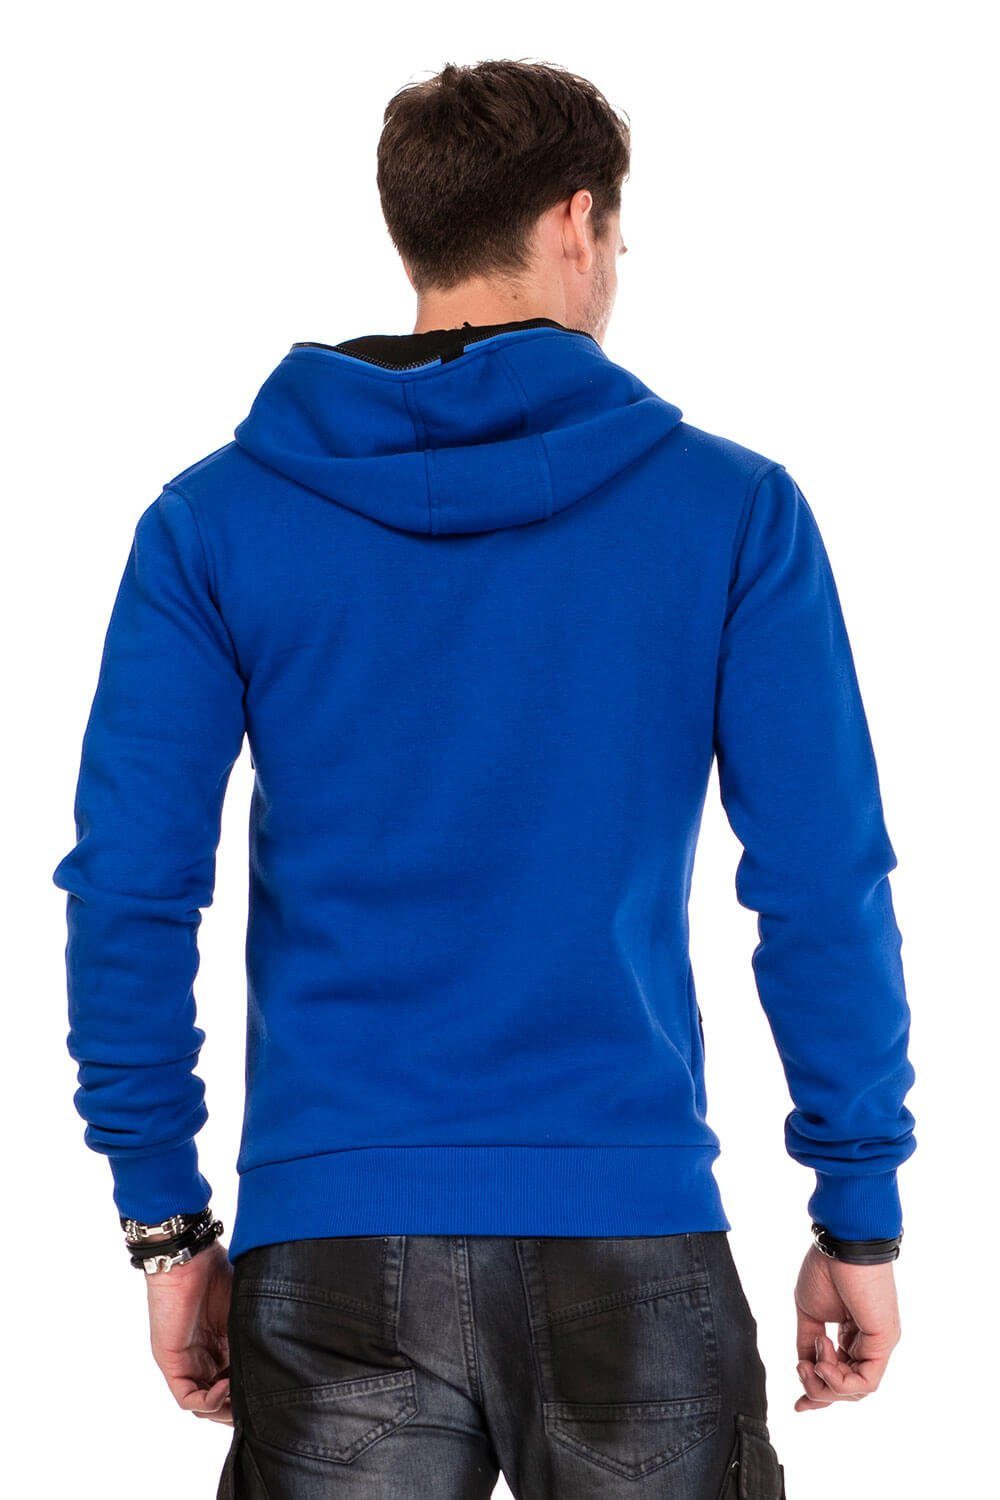 mit Cipo Baxx & Kragen blau Kapuzensweatshirt Reißverschluss